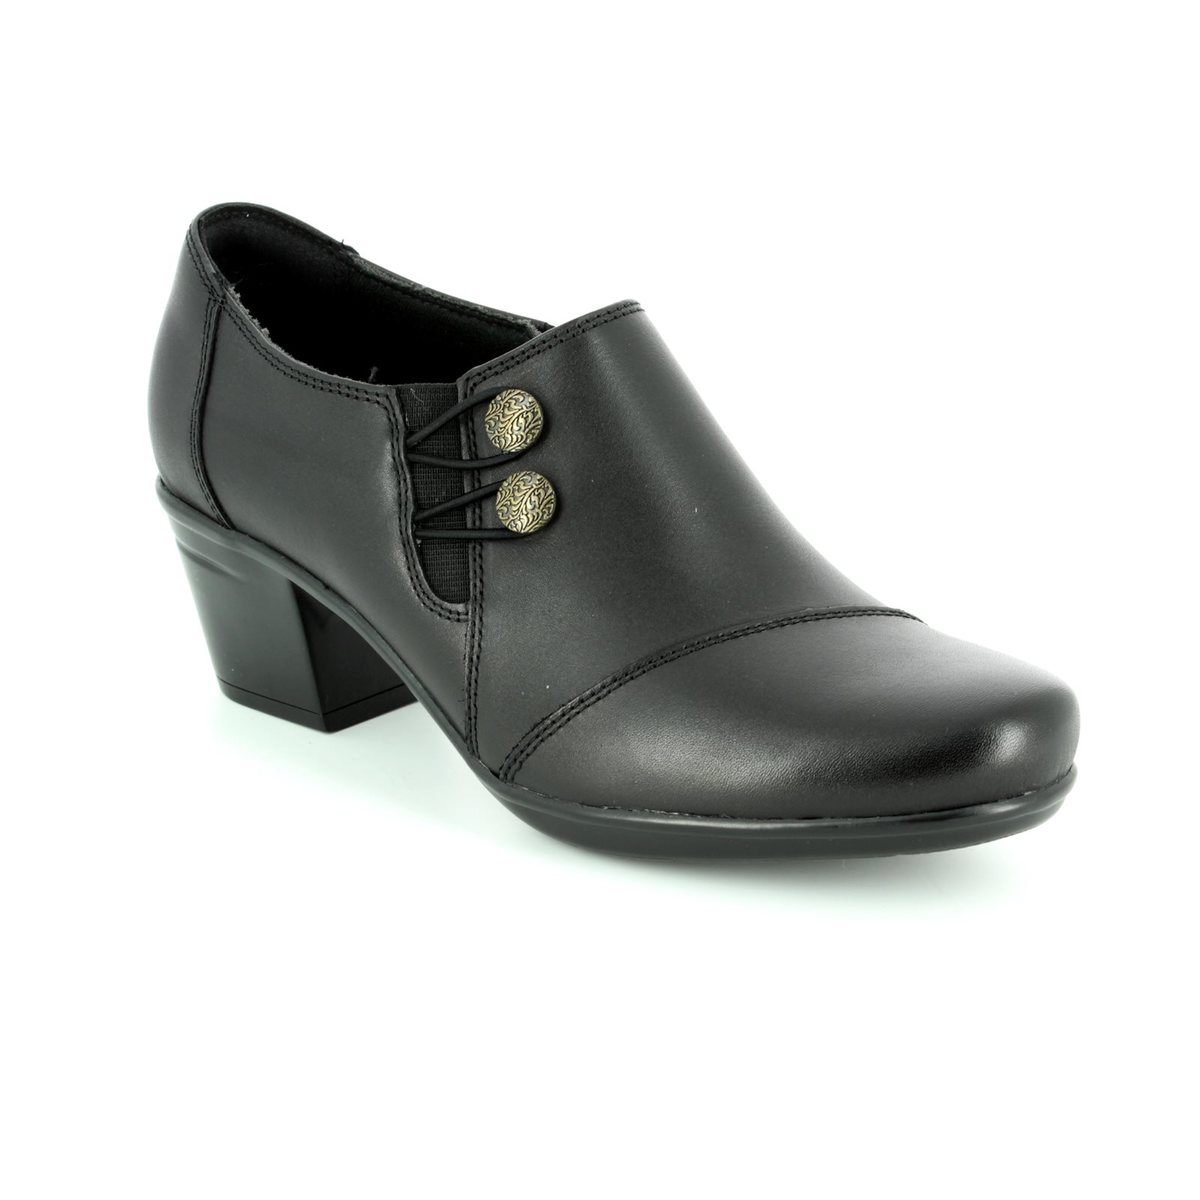 clarks shoe boots black